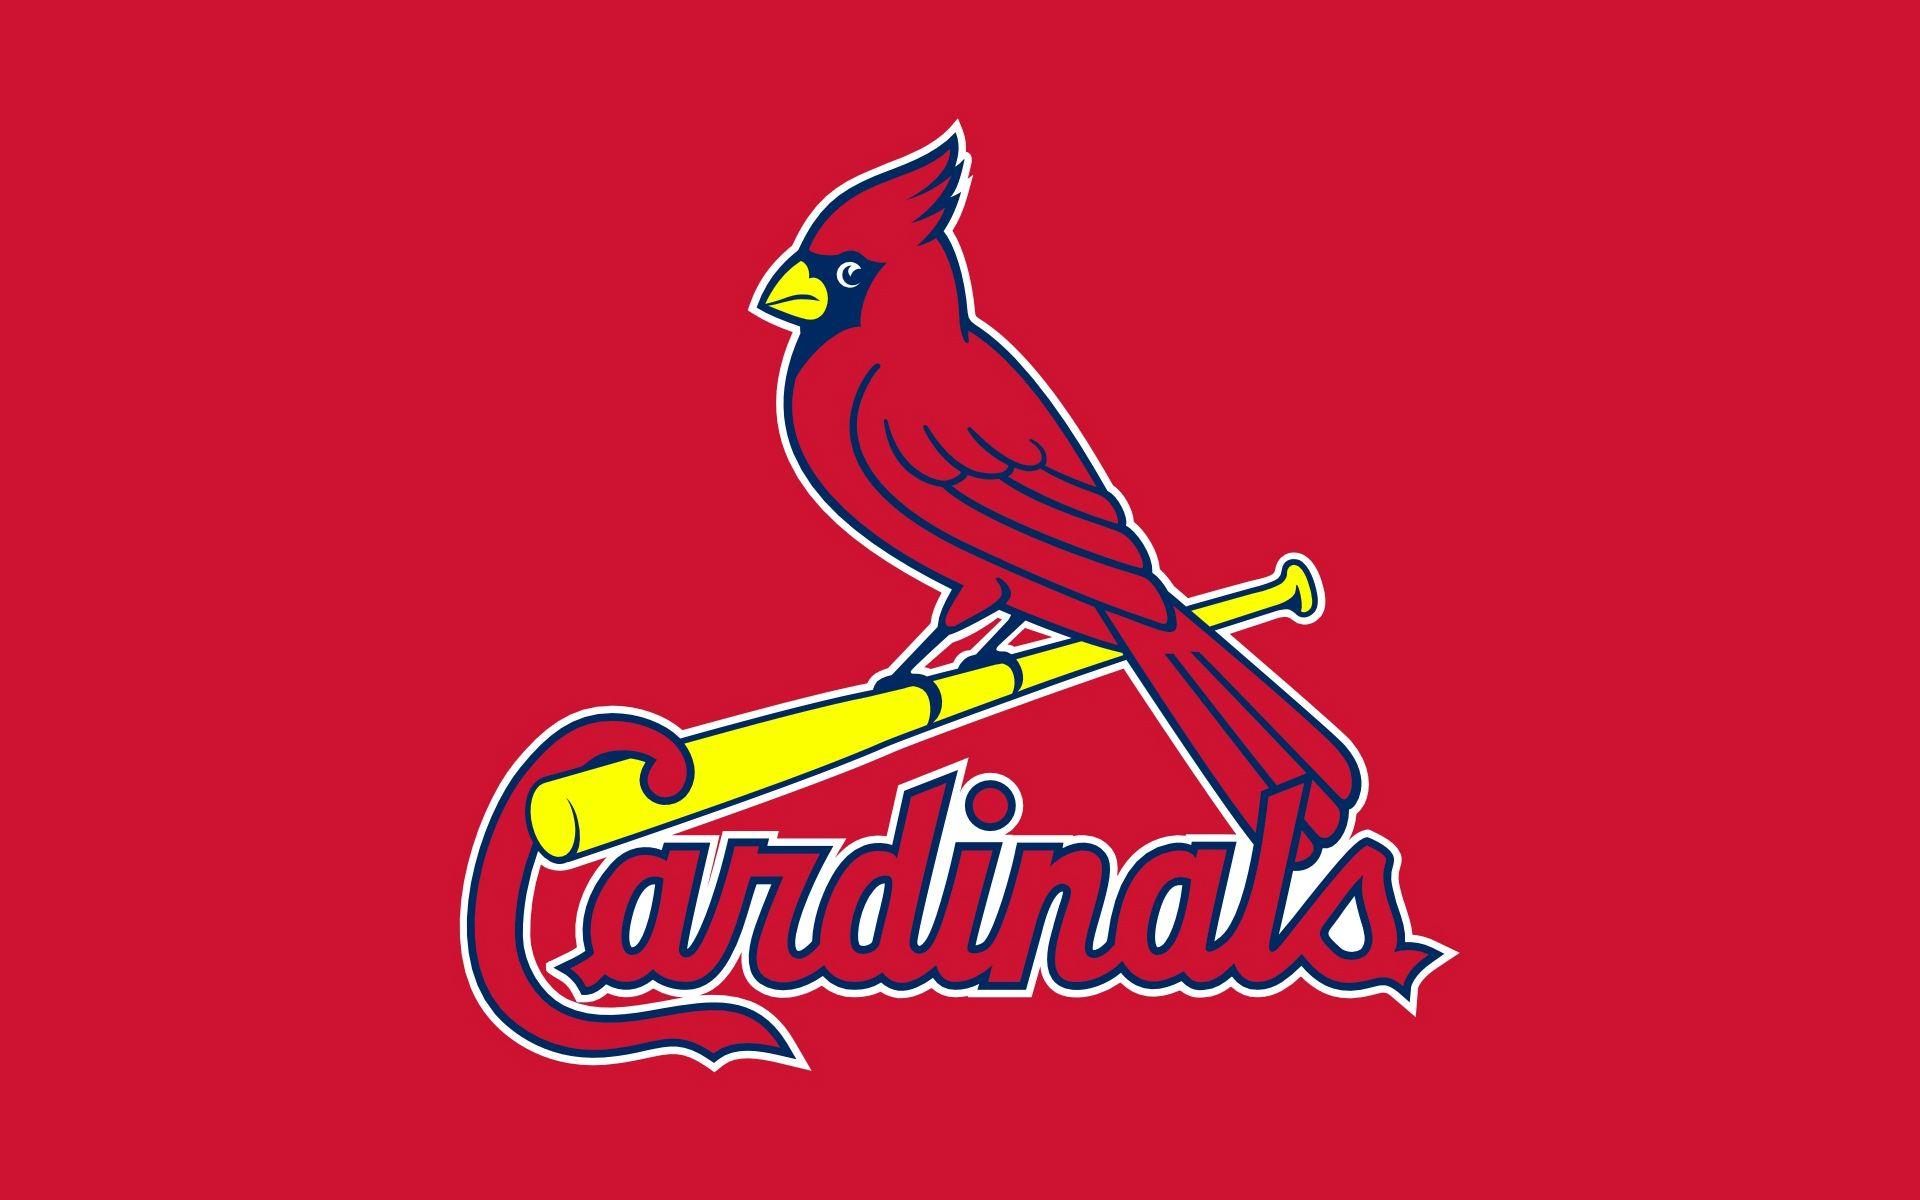 St. Louis Cardinals Uniform